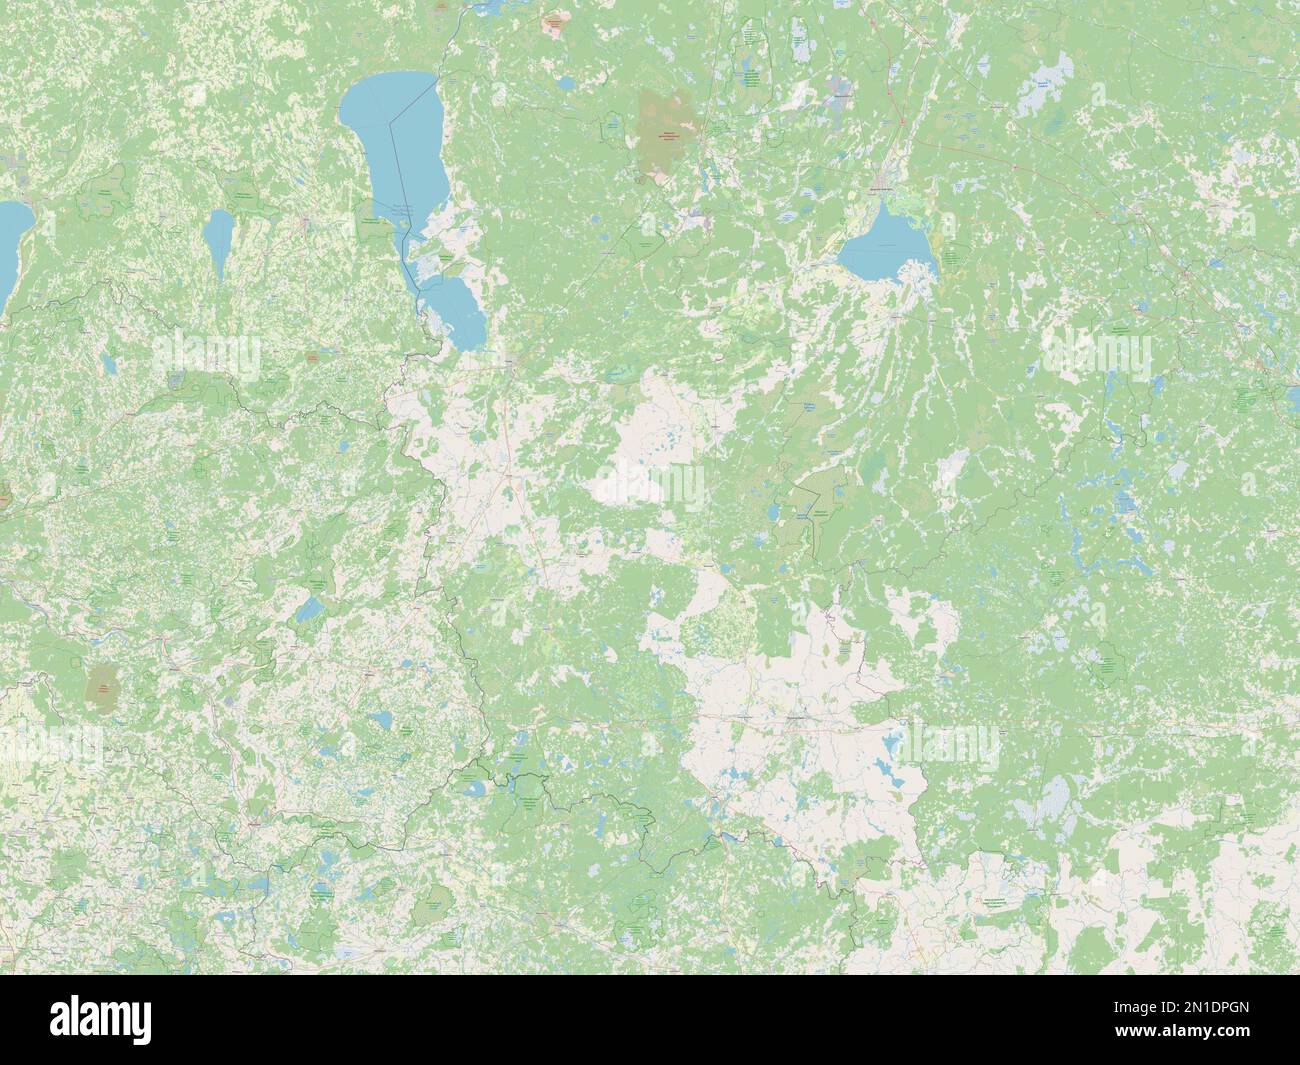 Pskov, region of Russia. Open Street Map Stock Photo